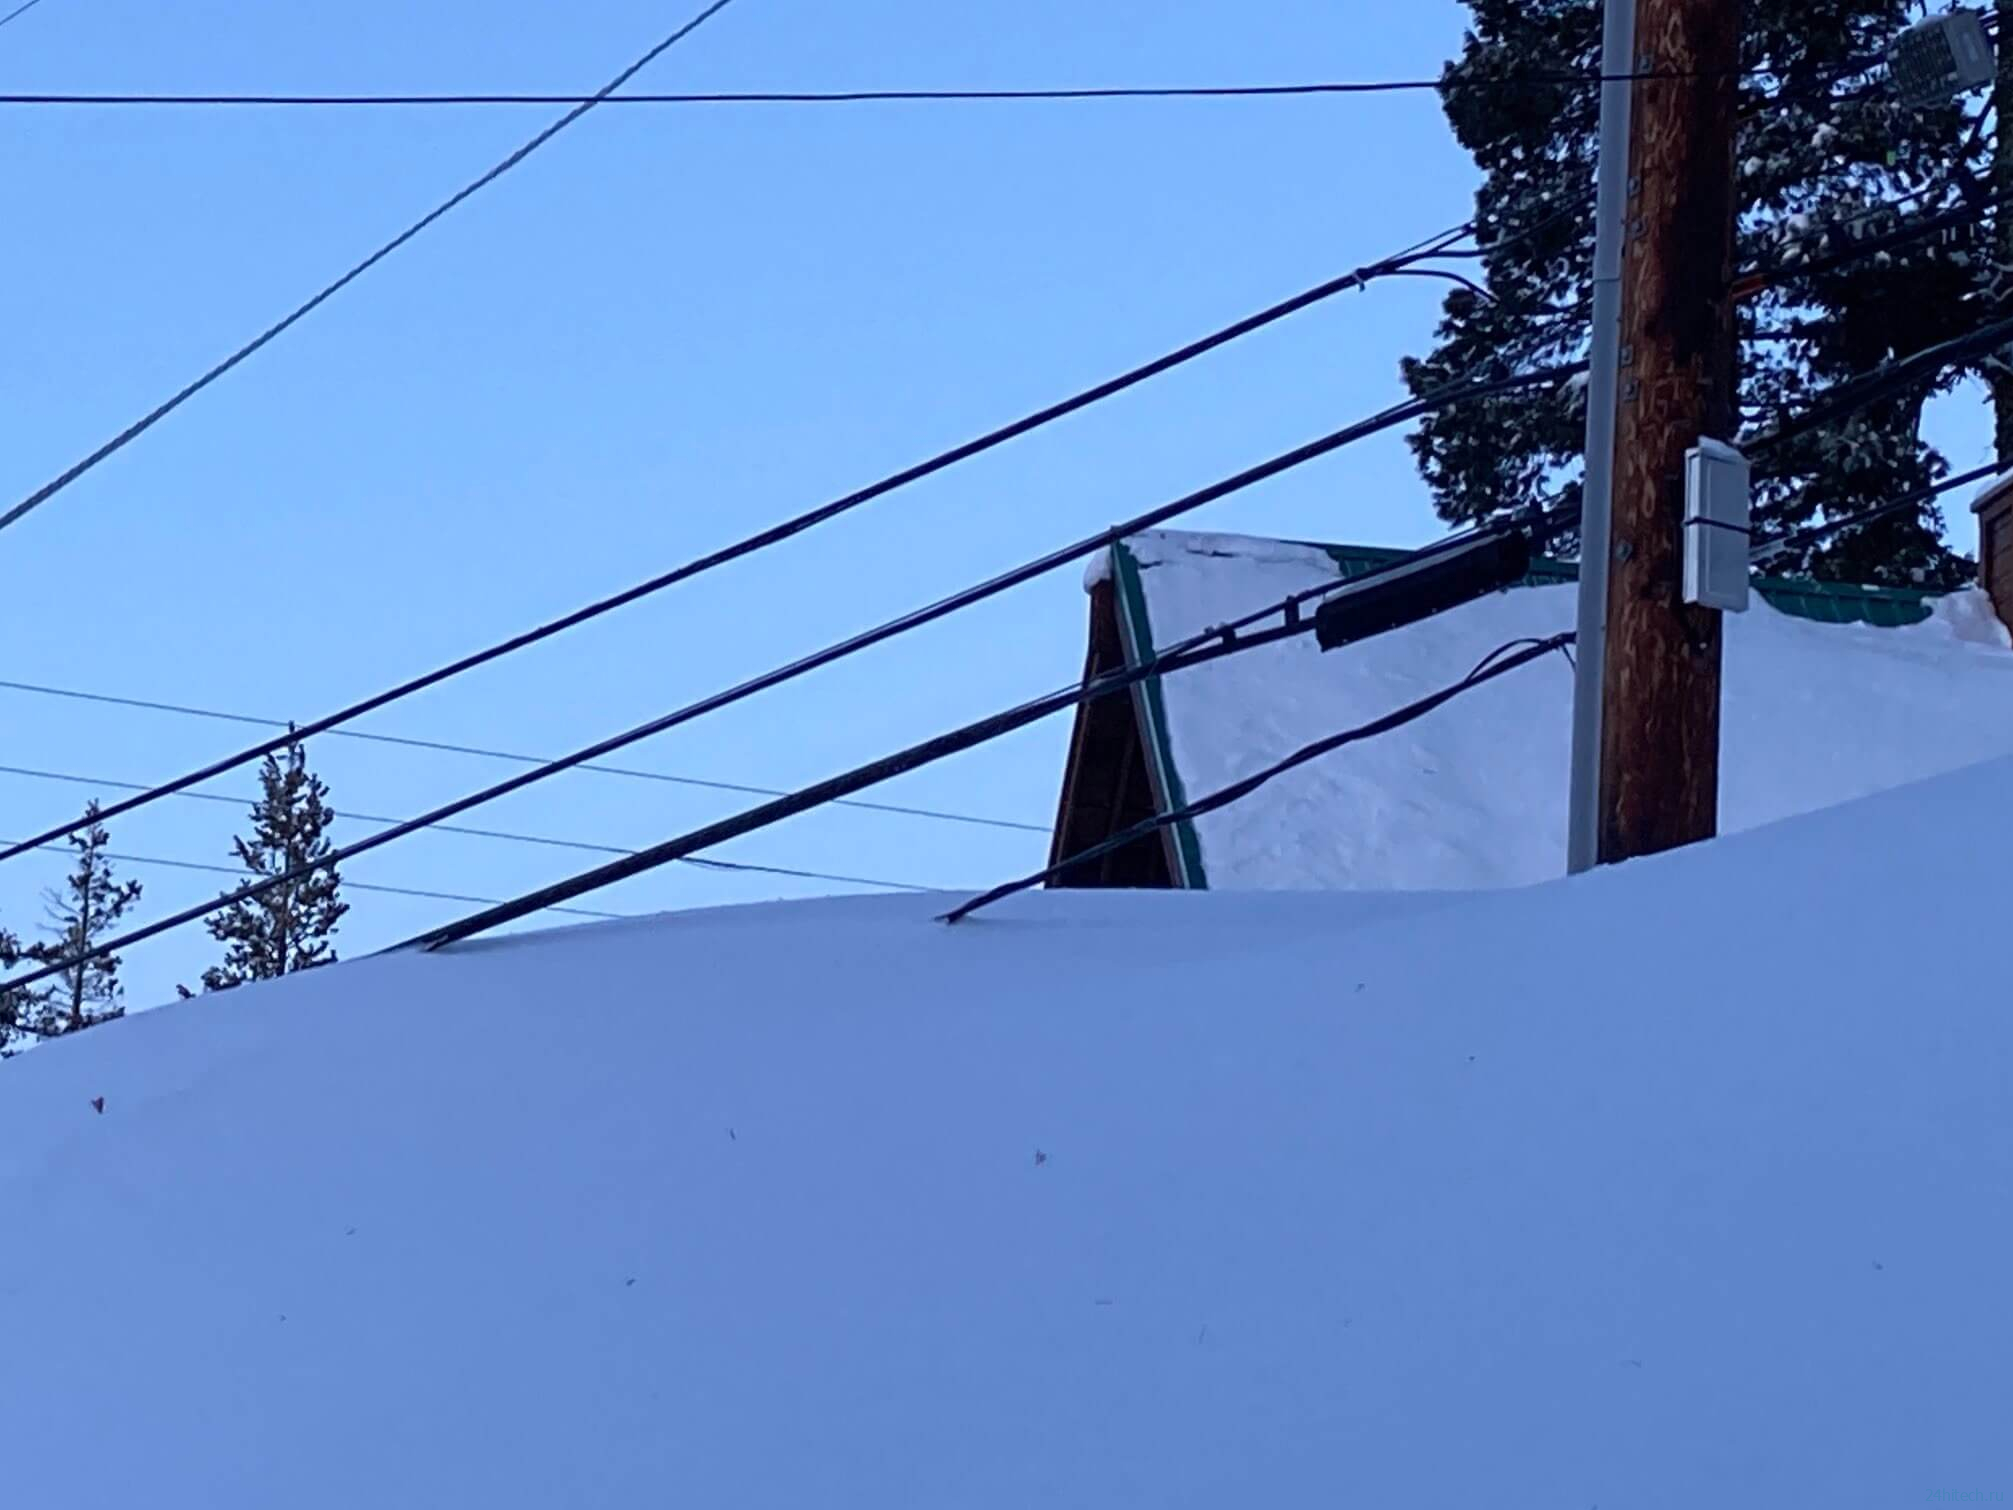 5-метровый снег заблокировал жителей Калифорнии в домах: подборка фотографий